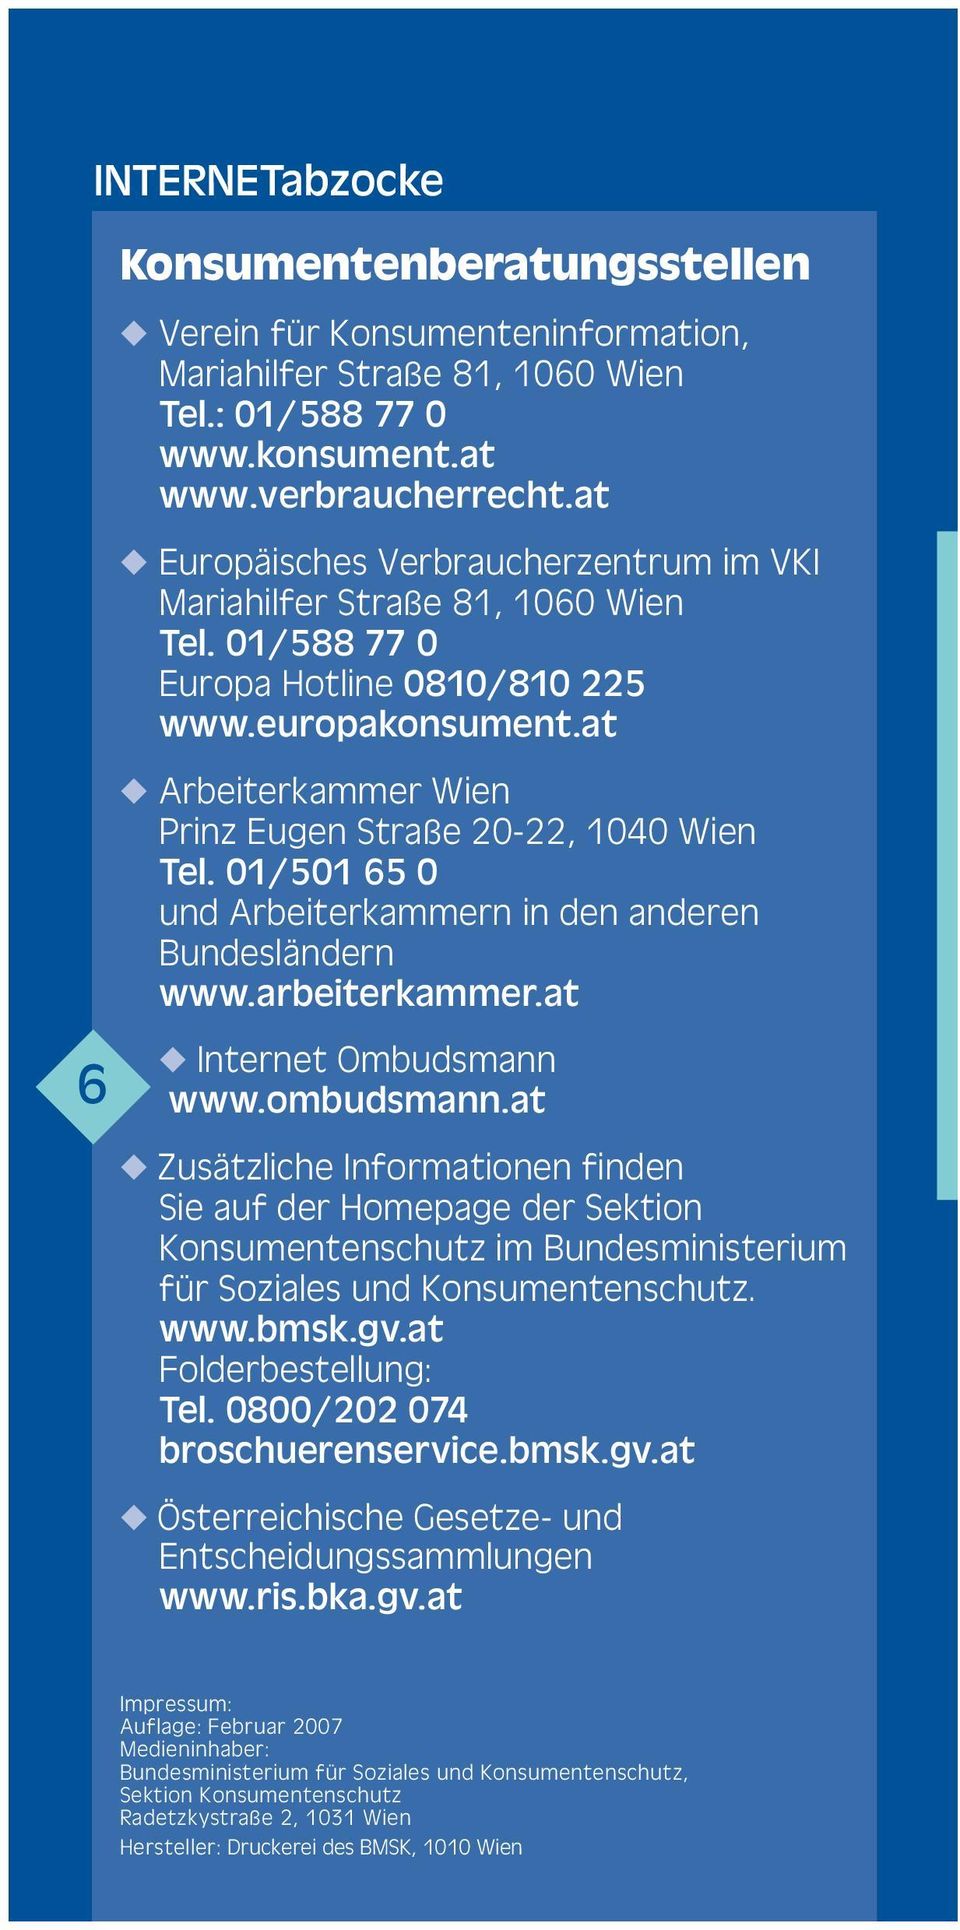 at Arbeiterkammer Wien Prinz Eugen Straße 20-22, 1040 Wien Tel. 01/501 65 0 und Arbeiterkammern in den anderen Bundesländern www.arbeiterkammer.at Internet Ombudsmann www.ombudsmann.